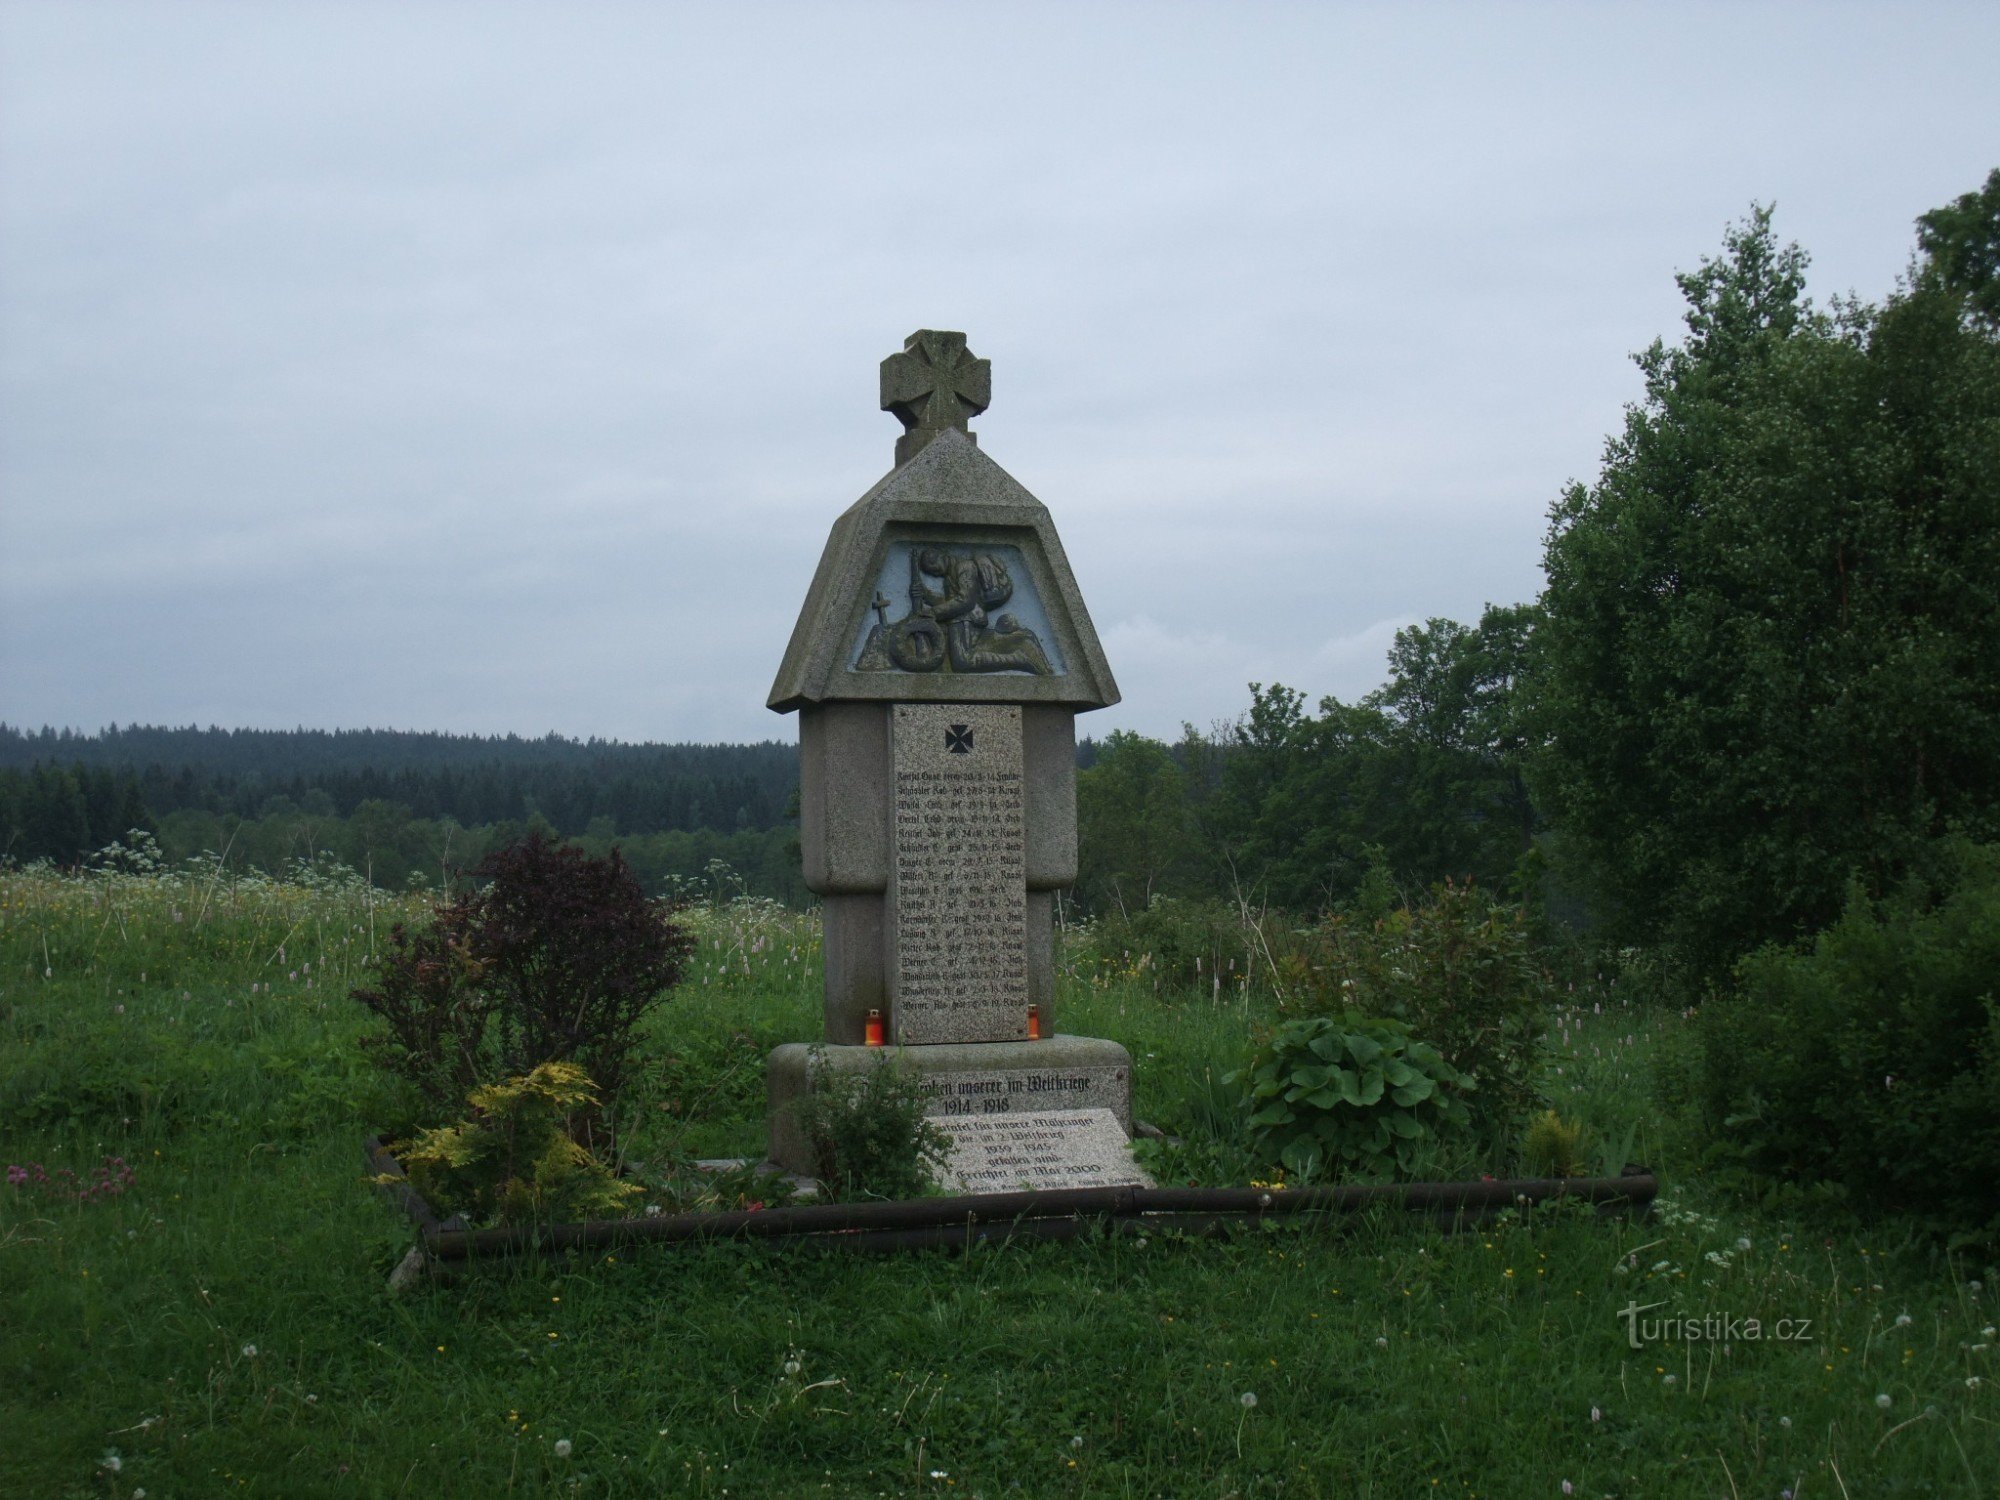 倒れた Ia II の記念碑。 ウイェズドの世界大戦